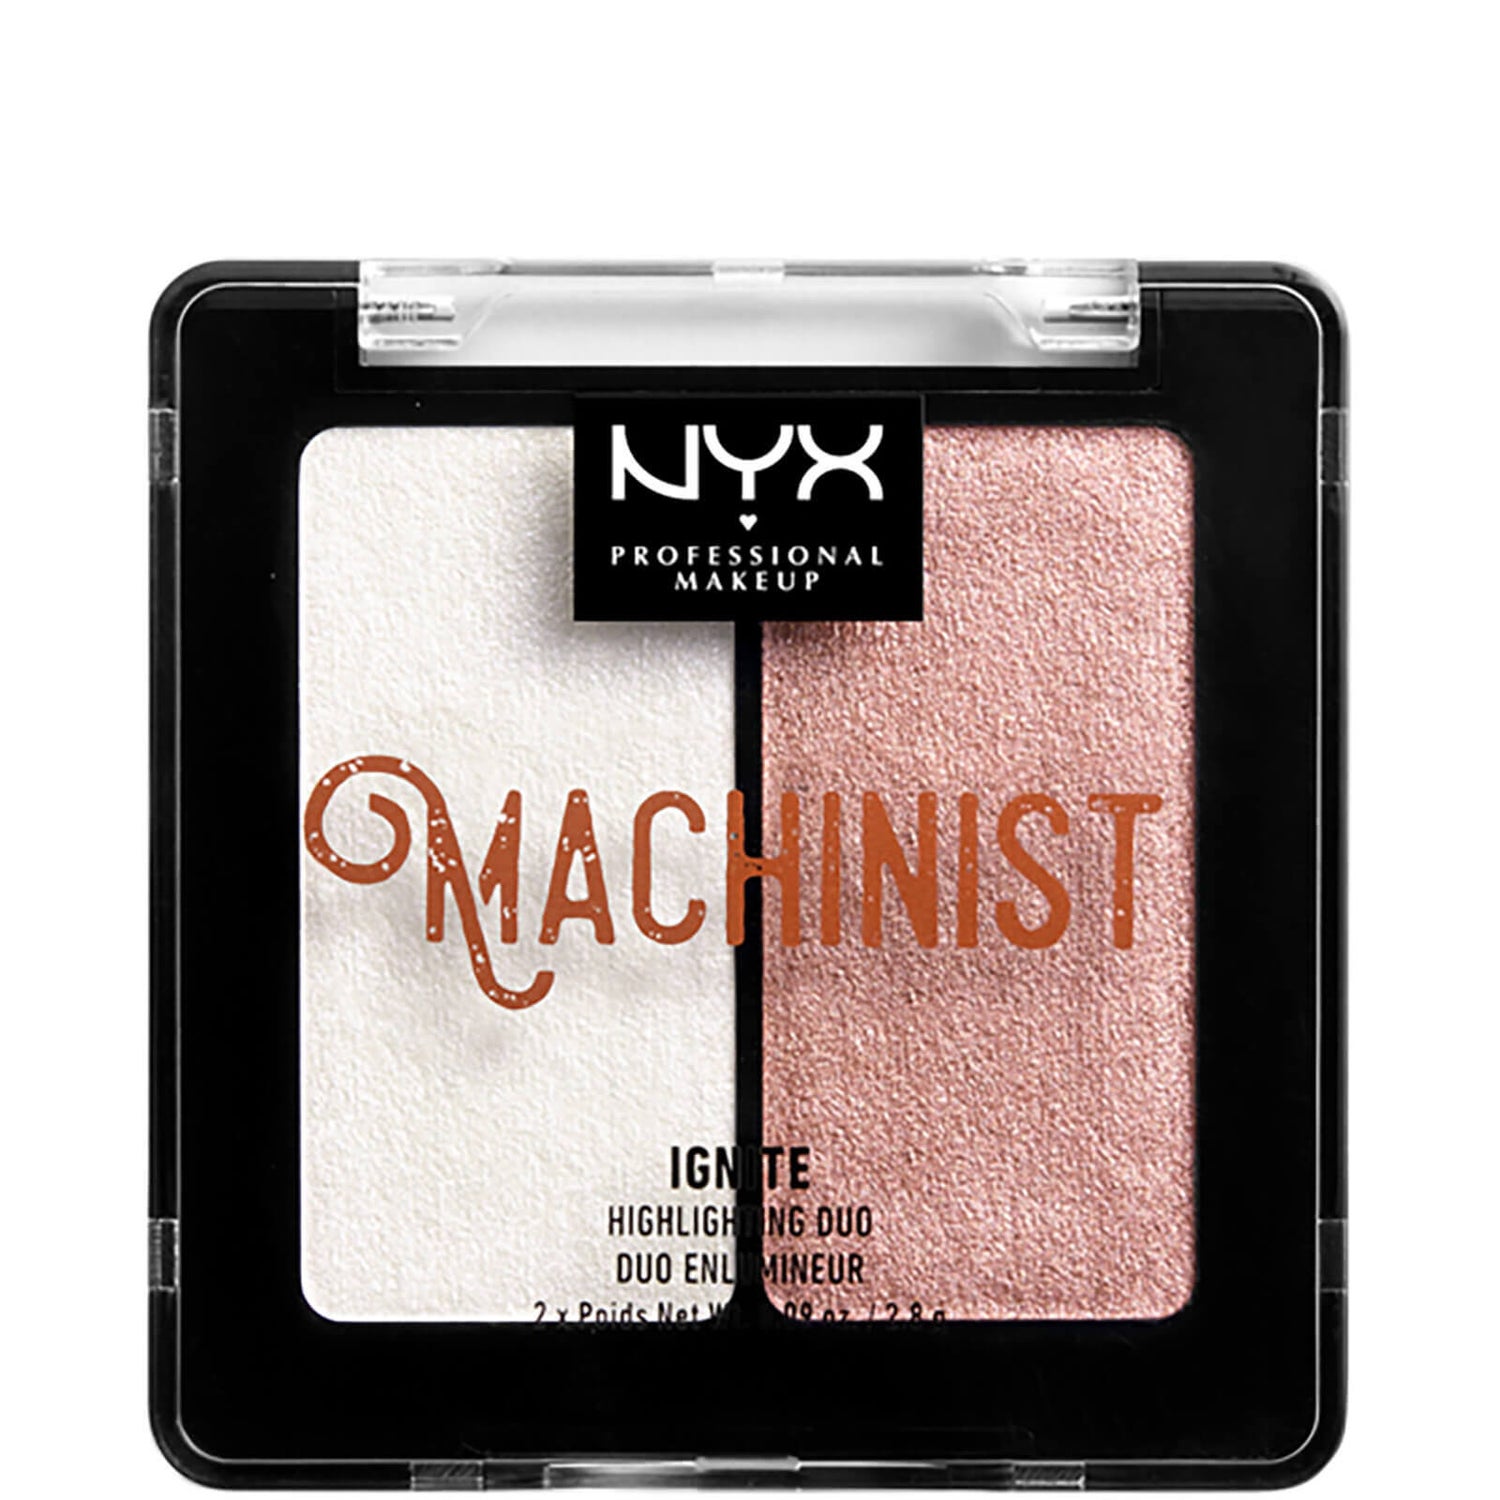 Duo Iluminador Metalizado Machinist da NYX Professional Makeup - Ignite